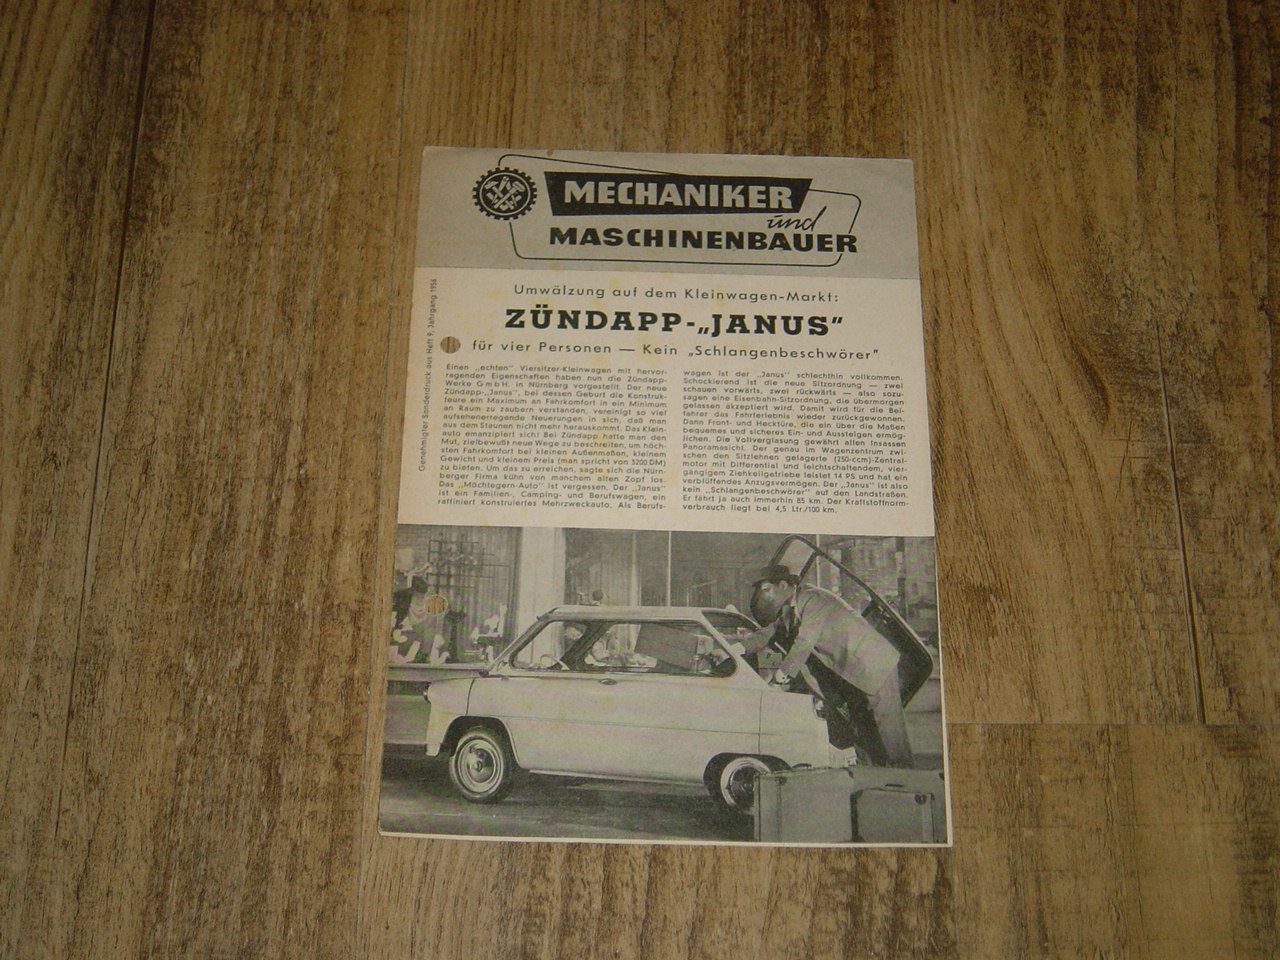 Promotional brochure D - Janus 250 Mechaniker und Maschinenbauer